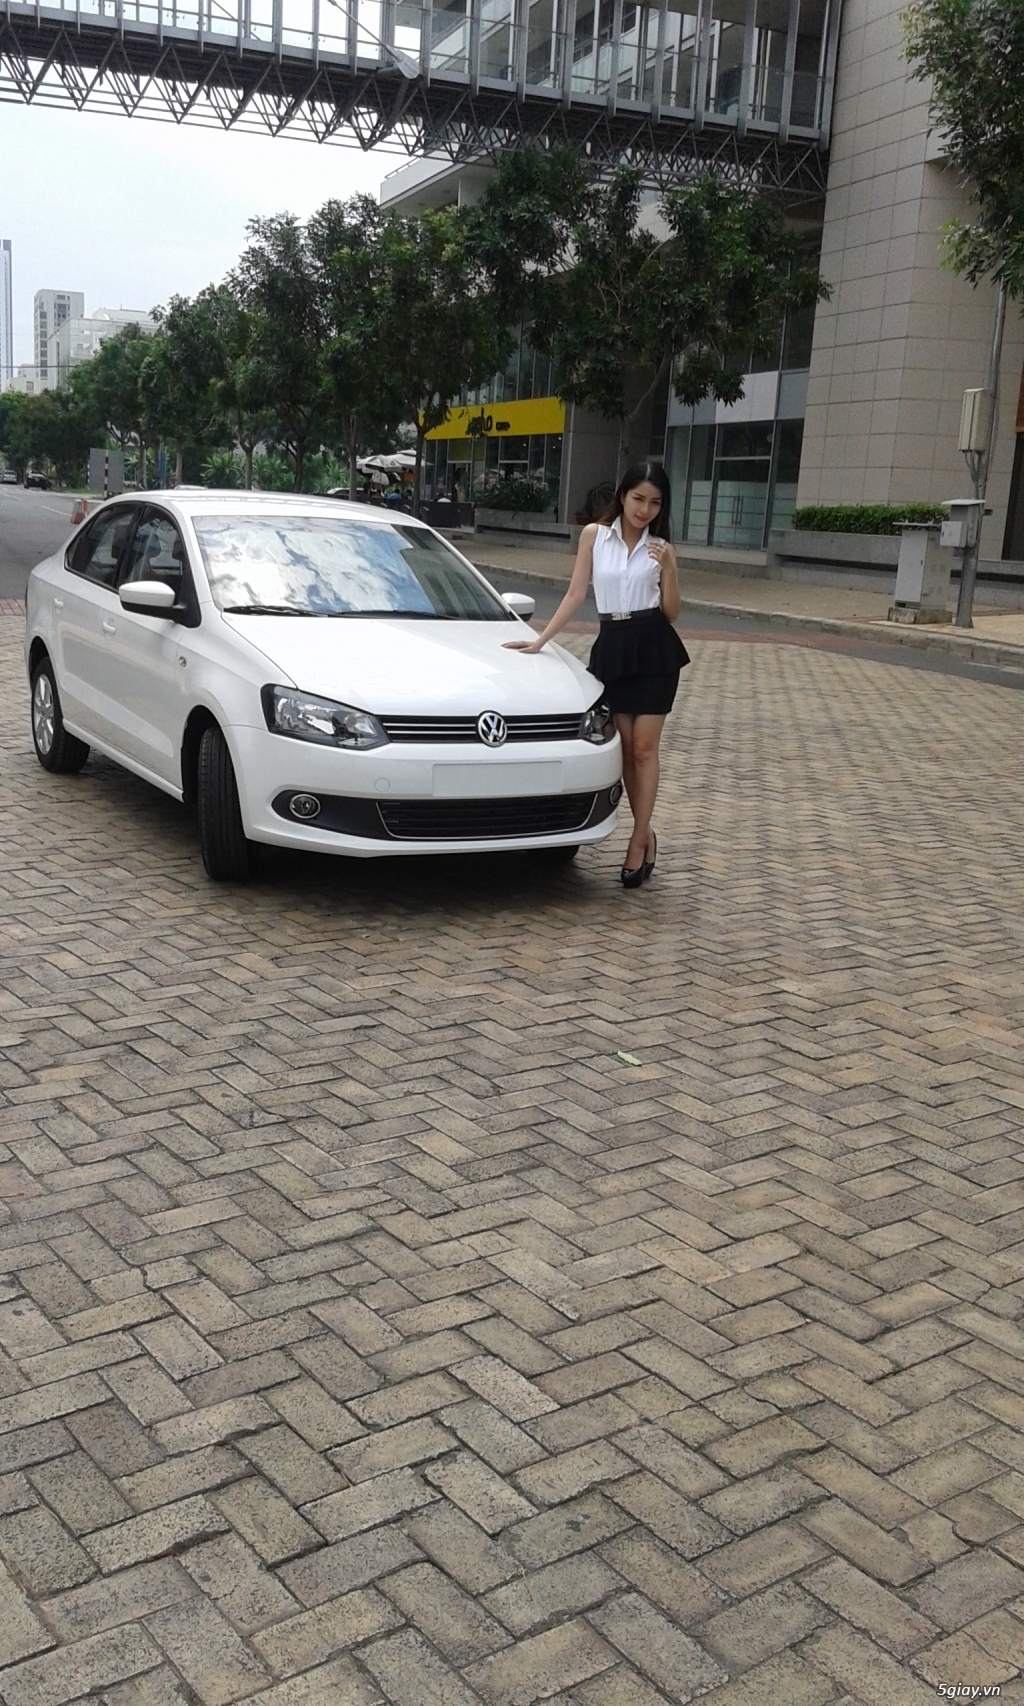 Volkswagen polo sedan xe nhập từ Đức giá Việt - 767.000.000 - 5